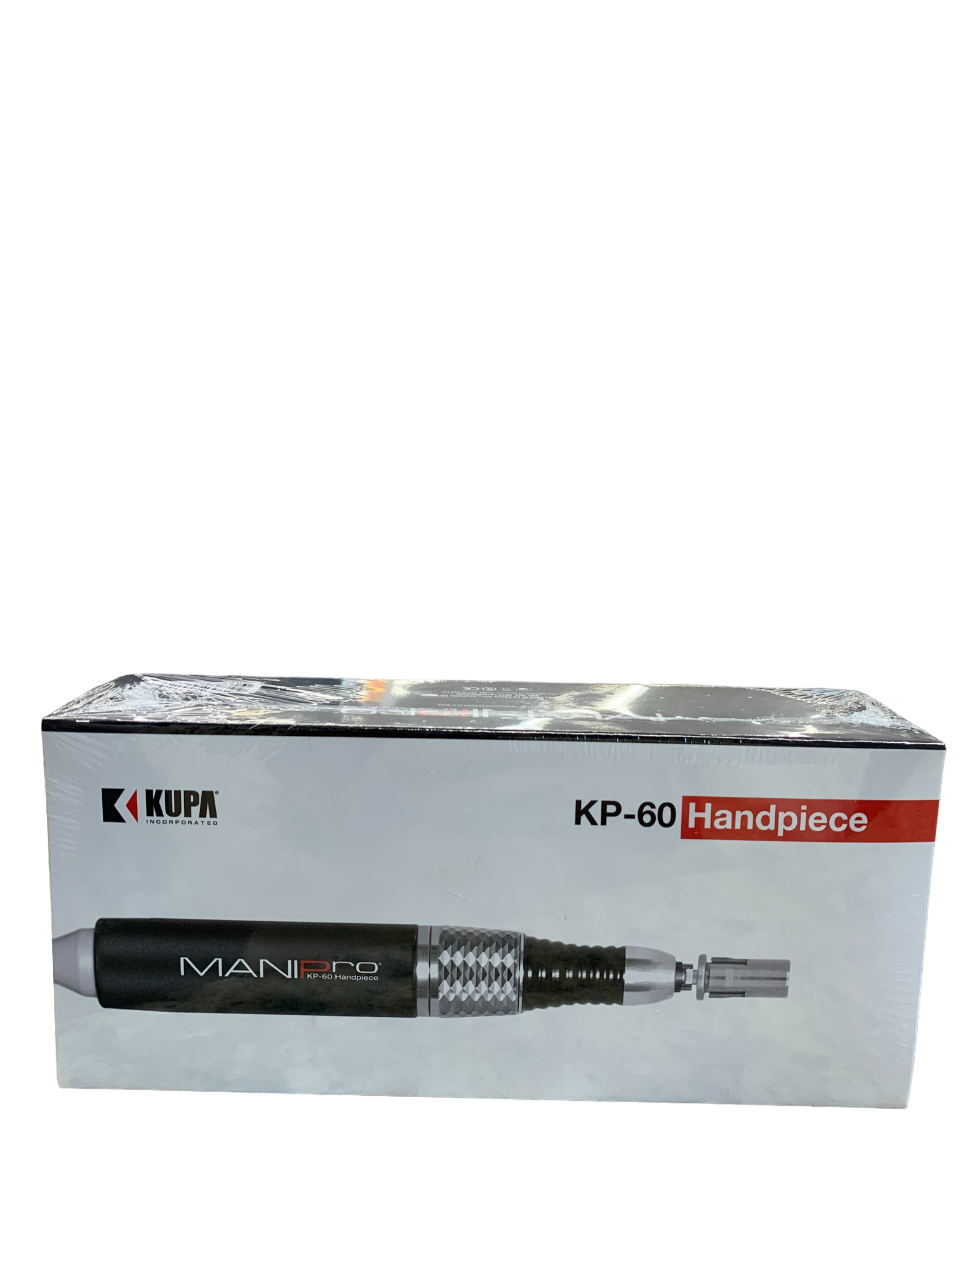 Kupa Mani Pro KP-60 Handpiece